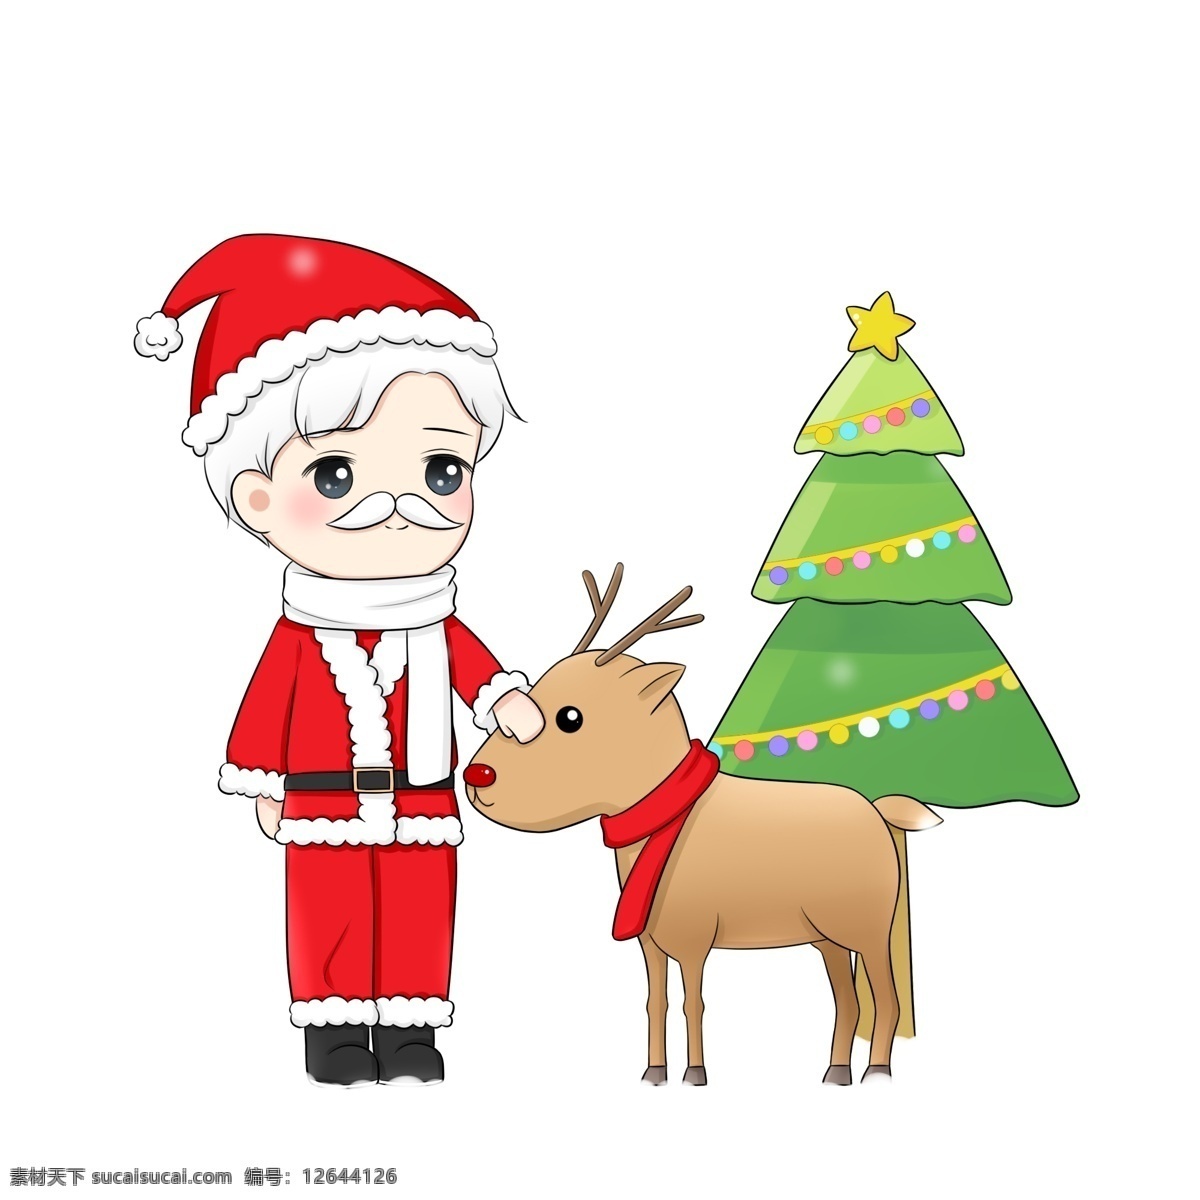 手绘 卡通 圣诞节 圣诞老人 麋鹿 圣诞树 免 抠 红色圣诞老人 圣诞快乐 带 红 围巾 圣诞 彩灯 下雪 夜晚 雪夜 圣诞帽 psd免抠 卡通手绘